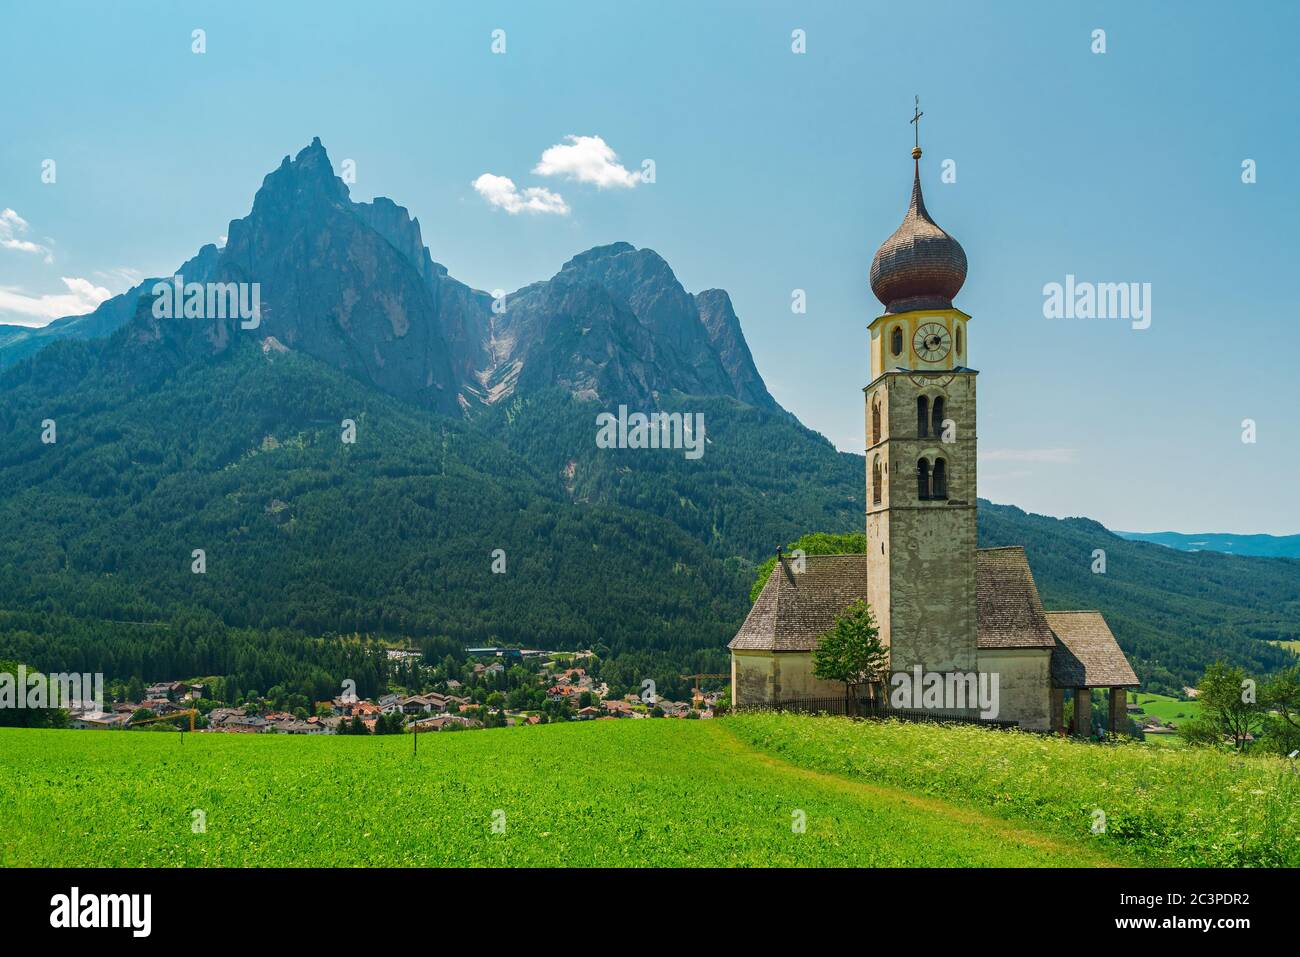 Bella vista della chiesa di San Valentin e Shlern montagna in Castelrotto villaggio italiano nelle Alpi Dolomiti. Alto Adige, Italia, Europa Foto Stock